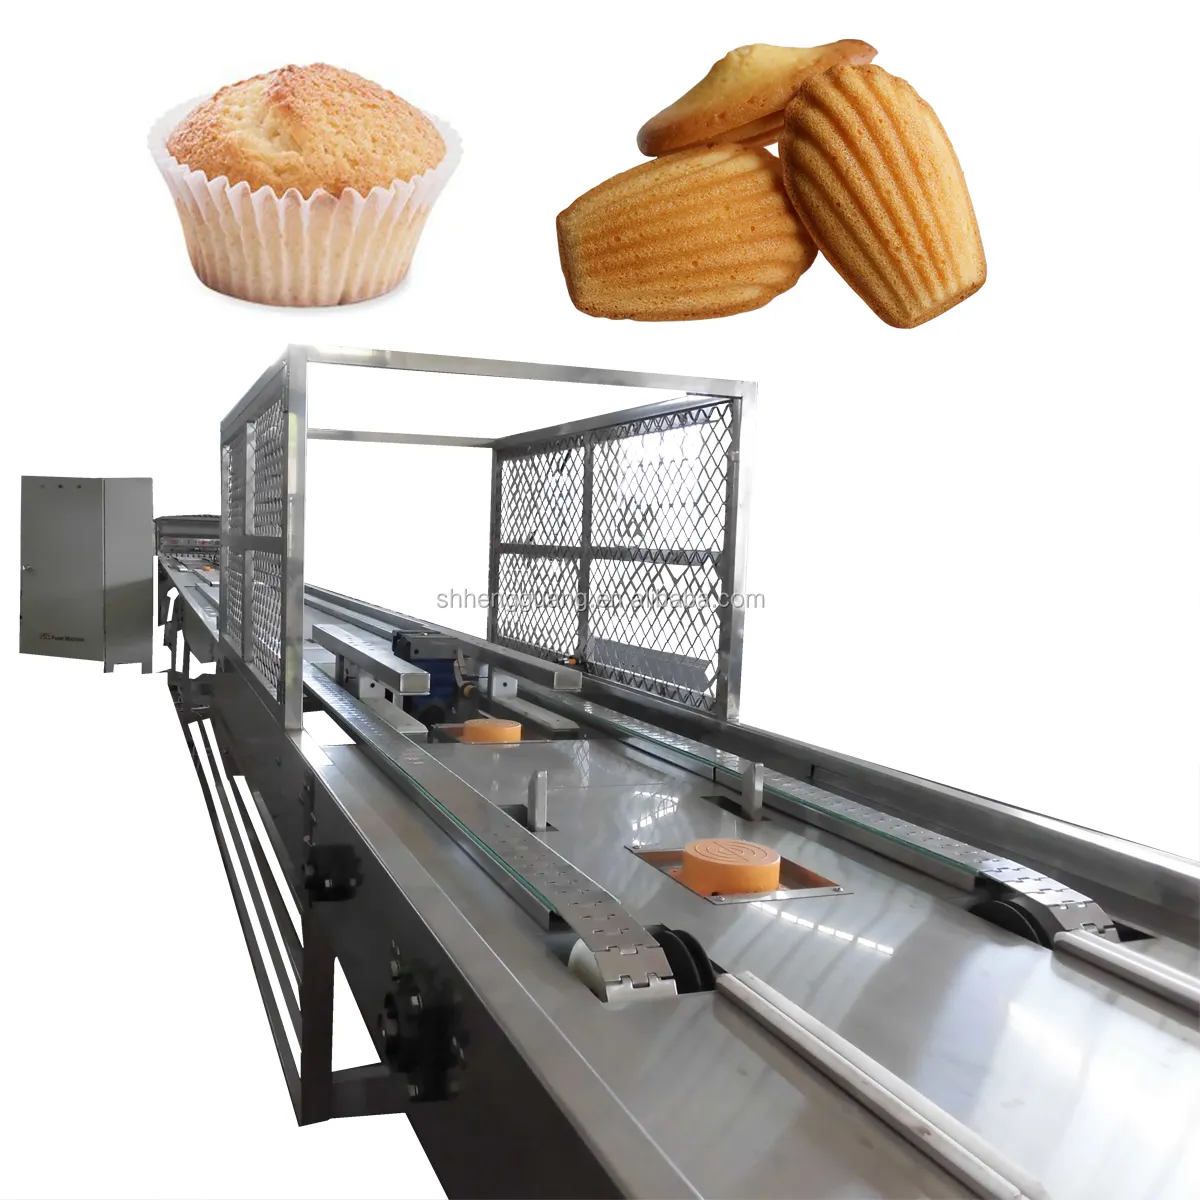 Máquina de fábrica de magdalenas rellenas de centro, línea de producción de pasteles, magdalenas y magdalenas